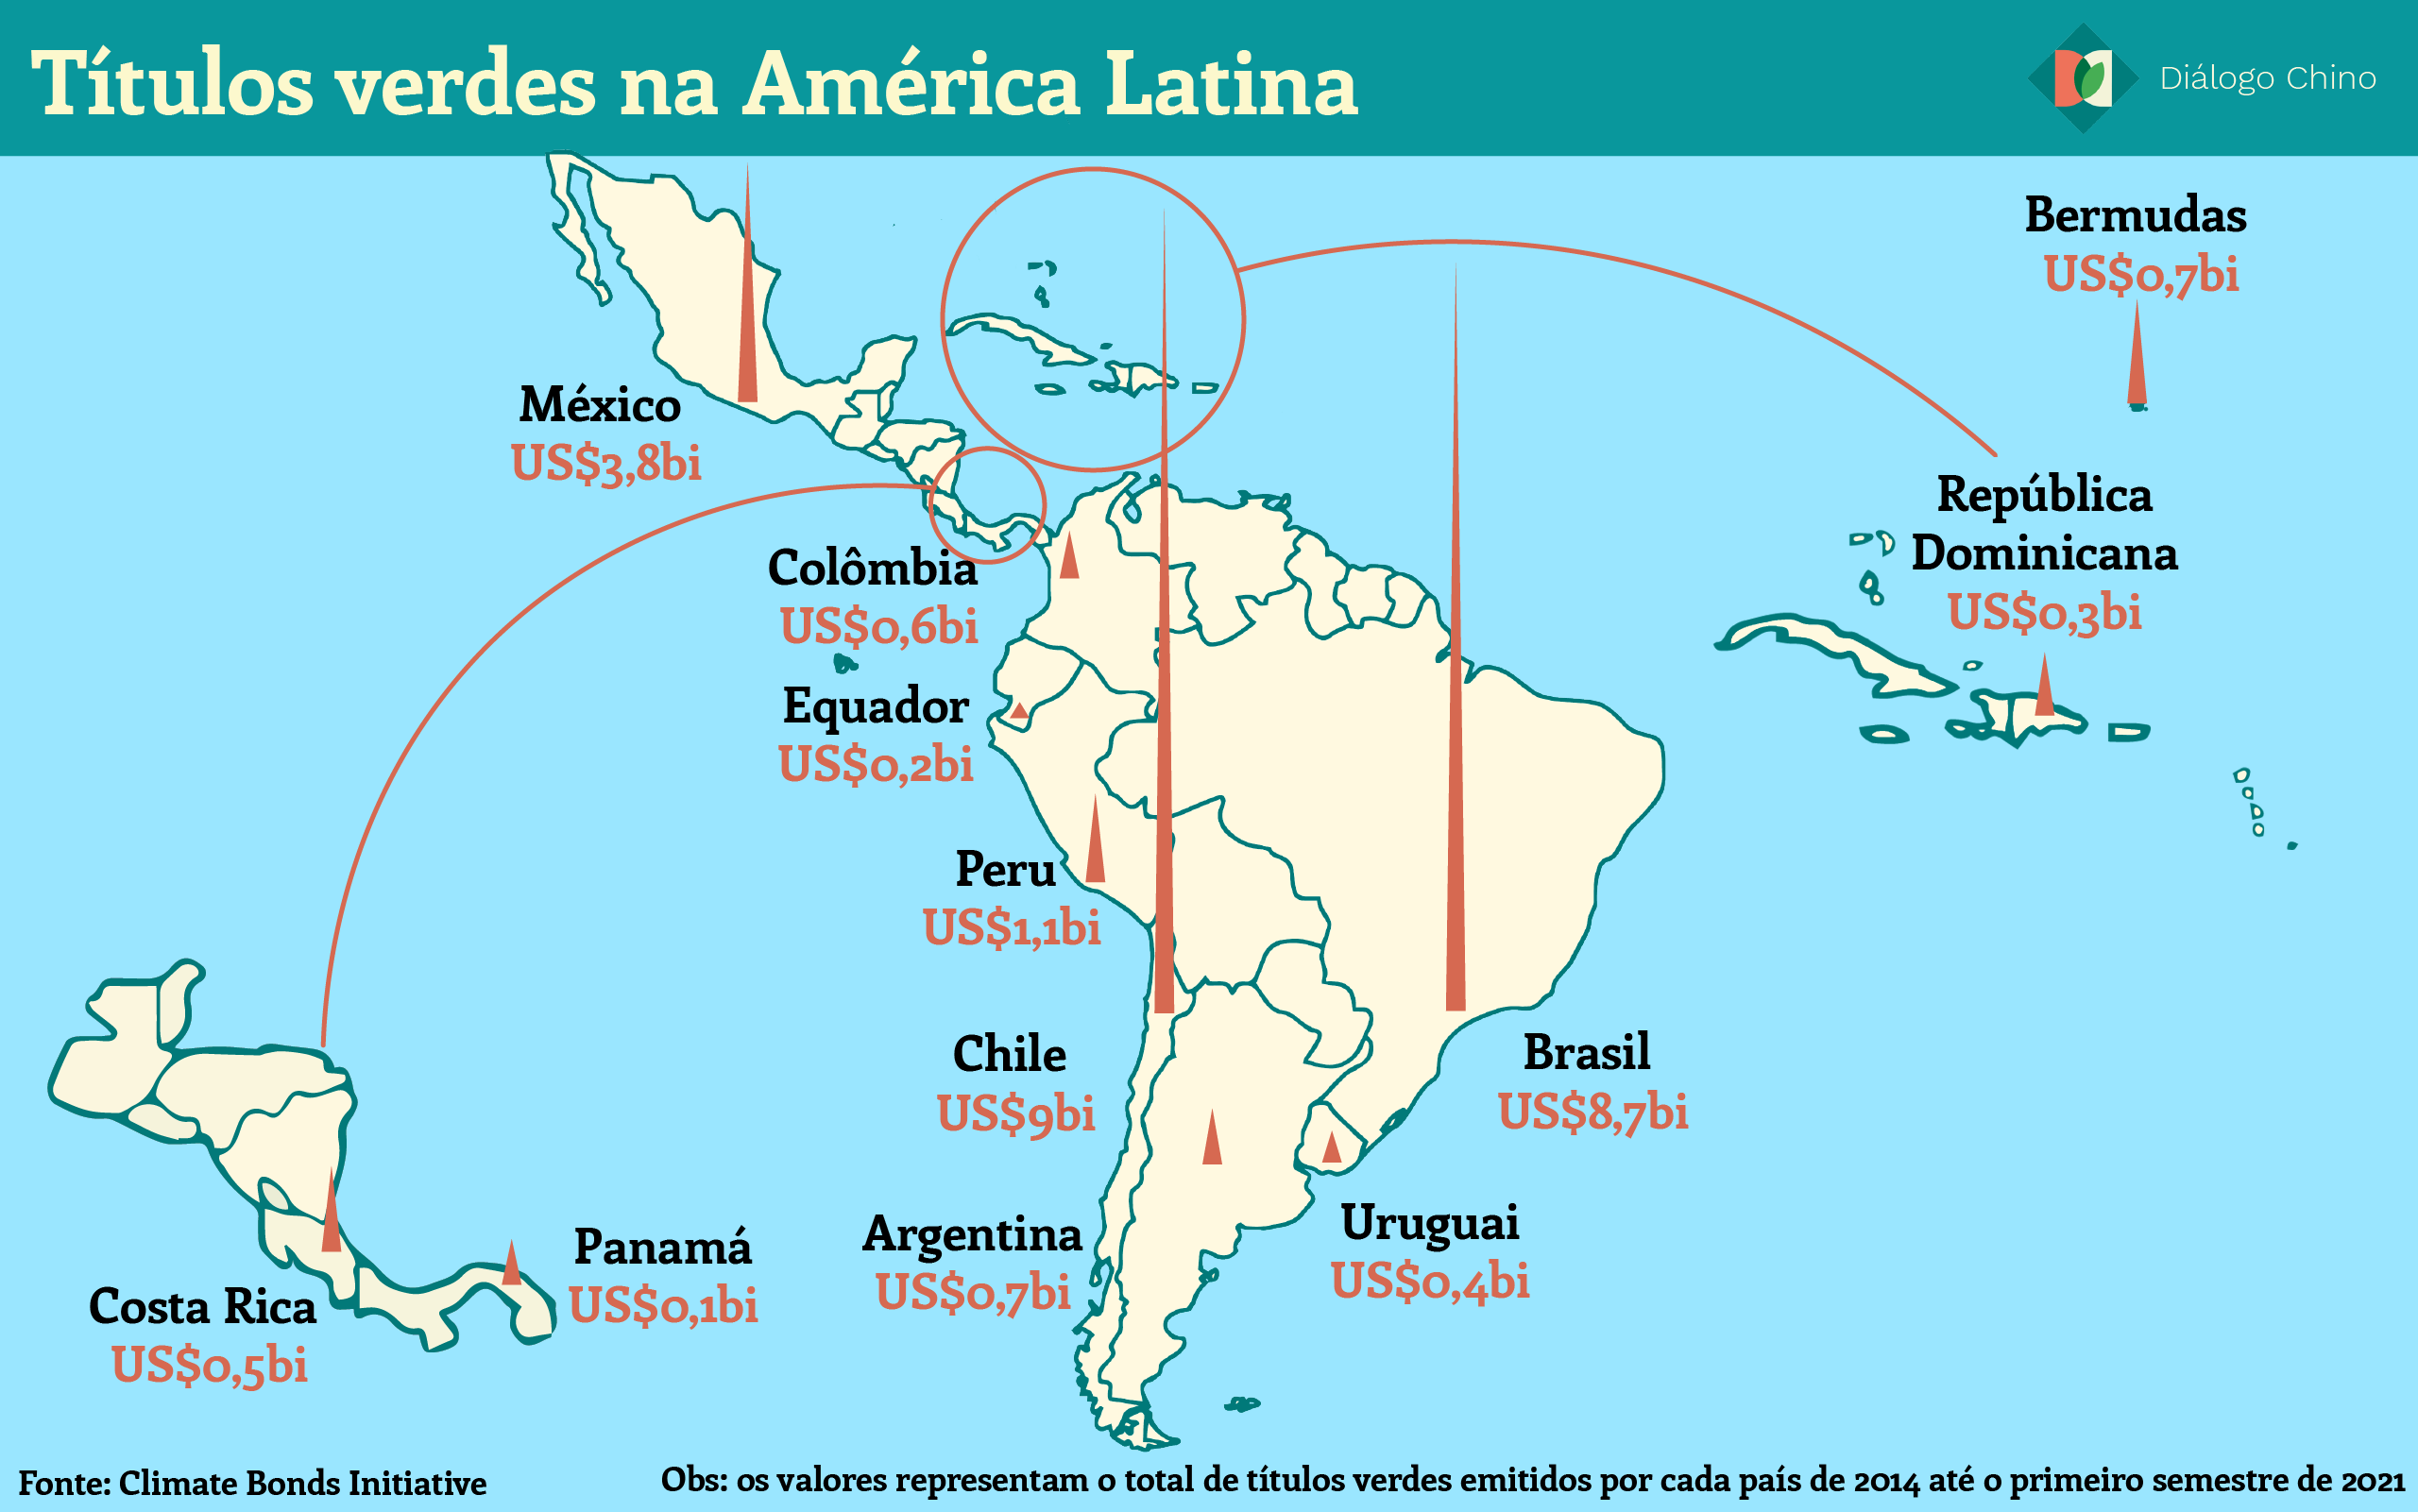 Mapa da América Latina mostrando os títulos verdes na região